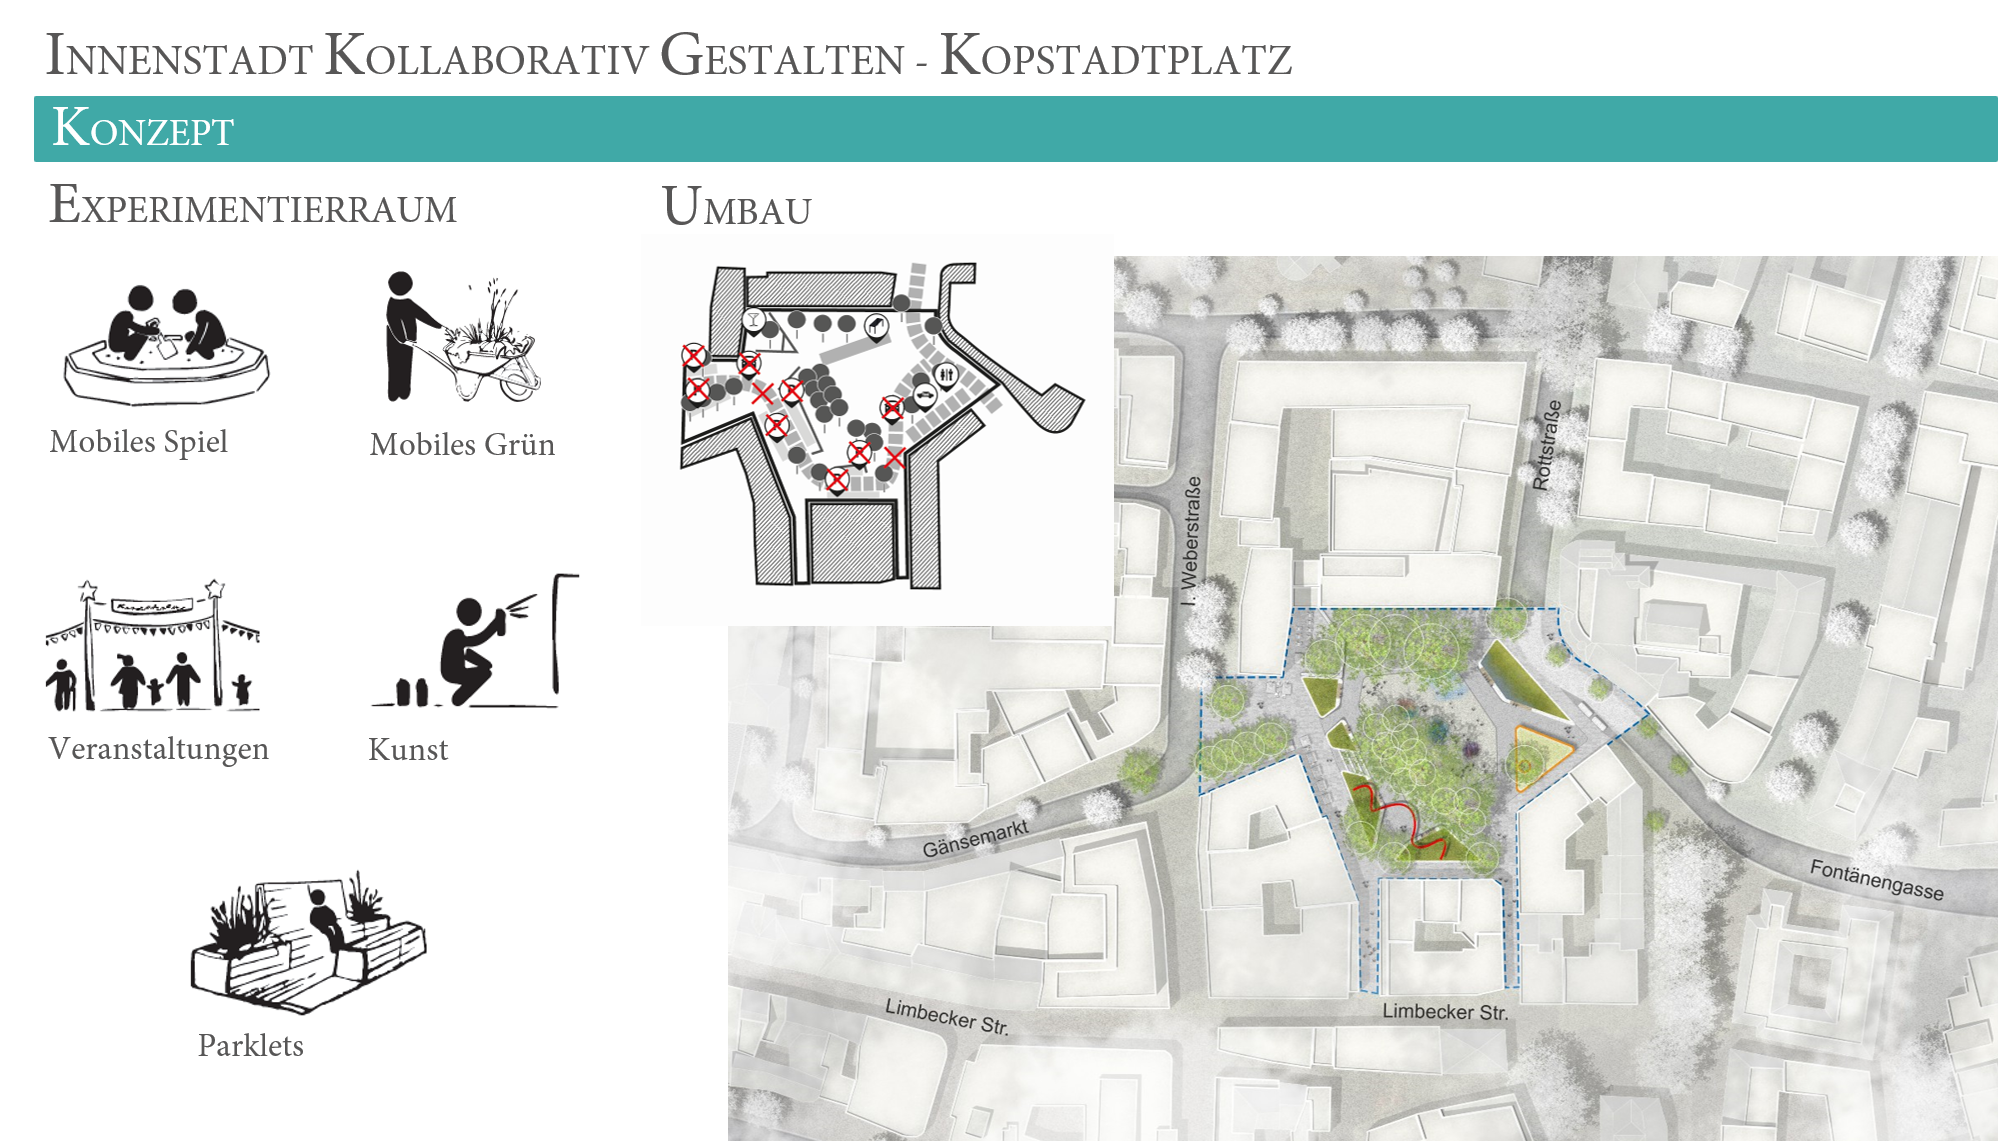 Kopstadtplatz gewinnt im Landeswettbewerb Zukunft Stadtraum